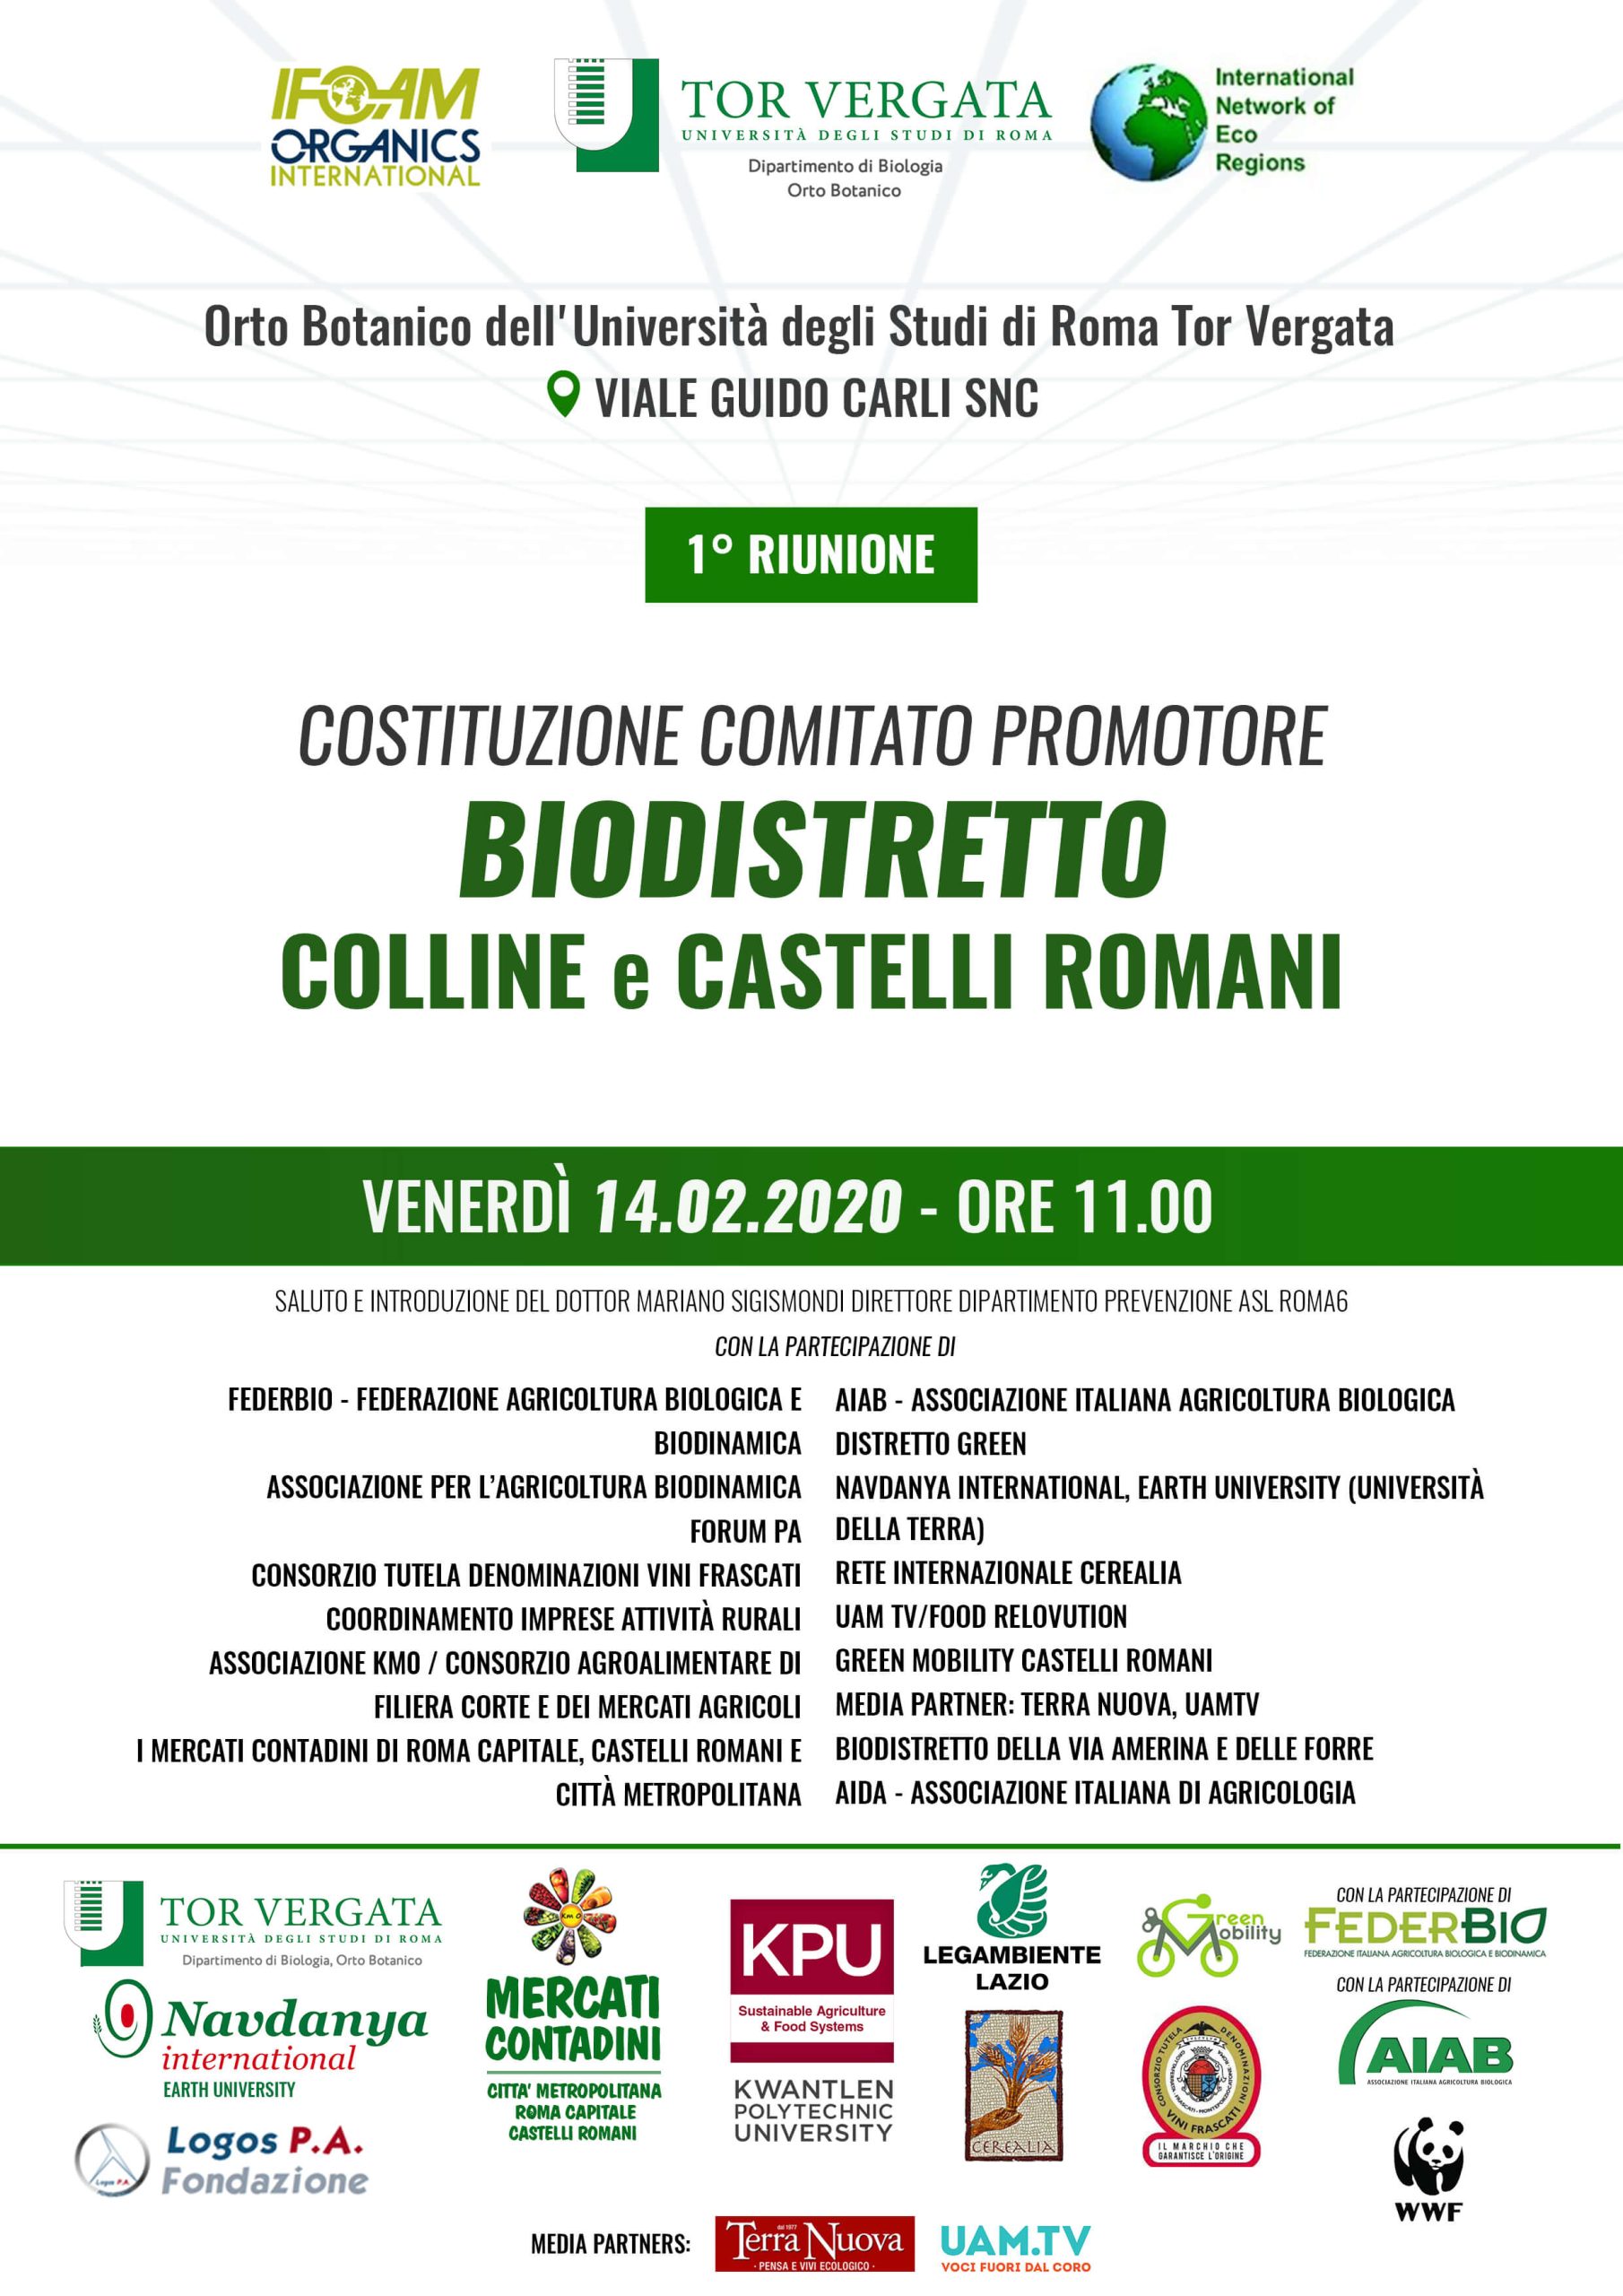 BIODISTRETTO COLLINE E CASTELLI ROMANI - 14 FEBBRAIO 2020